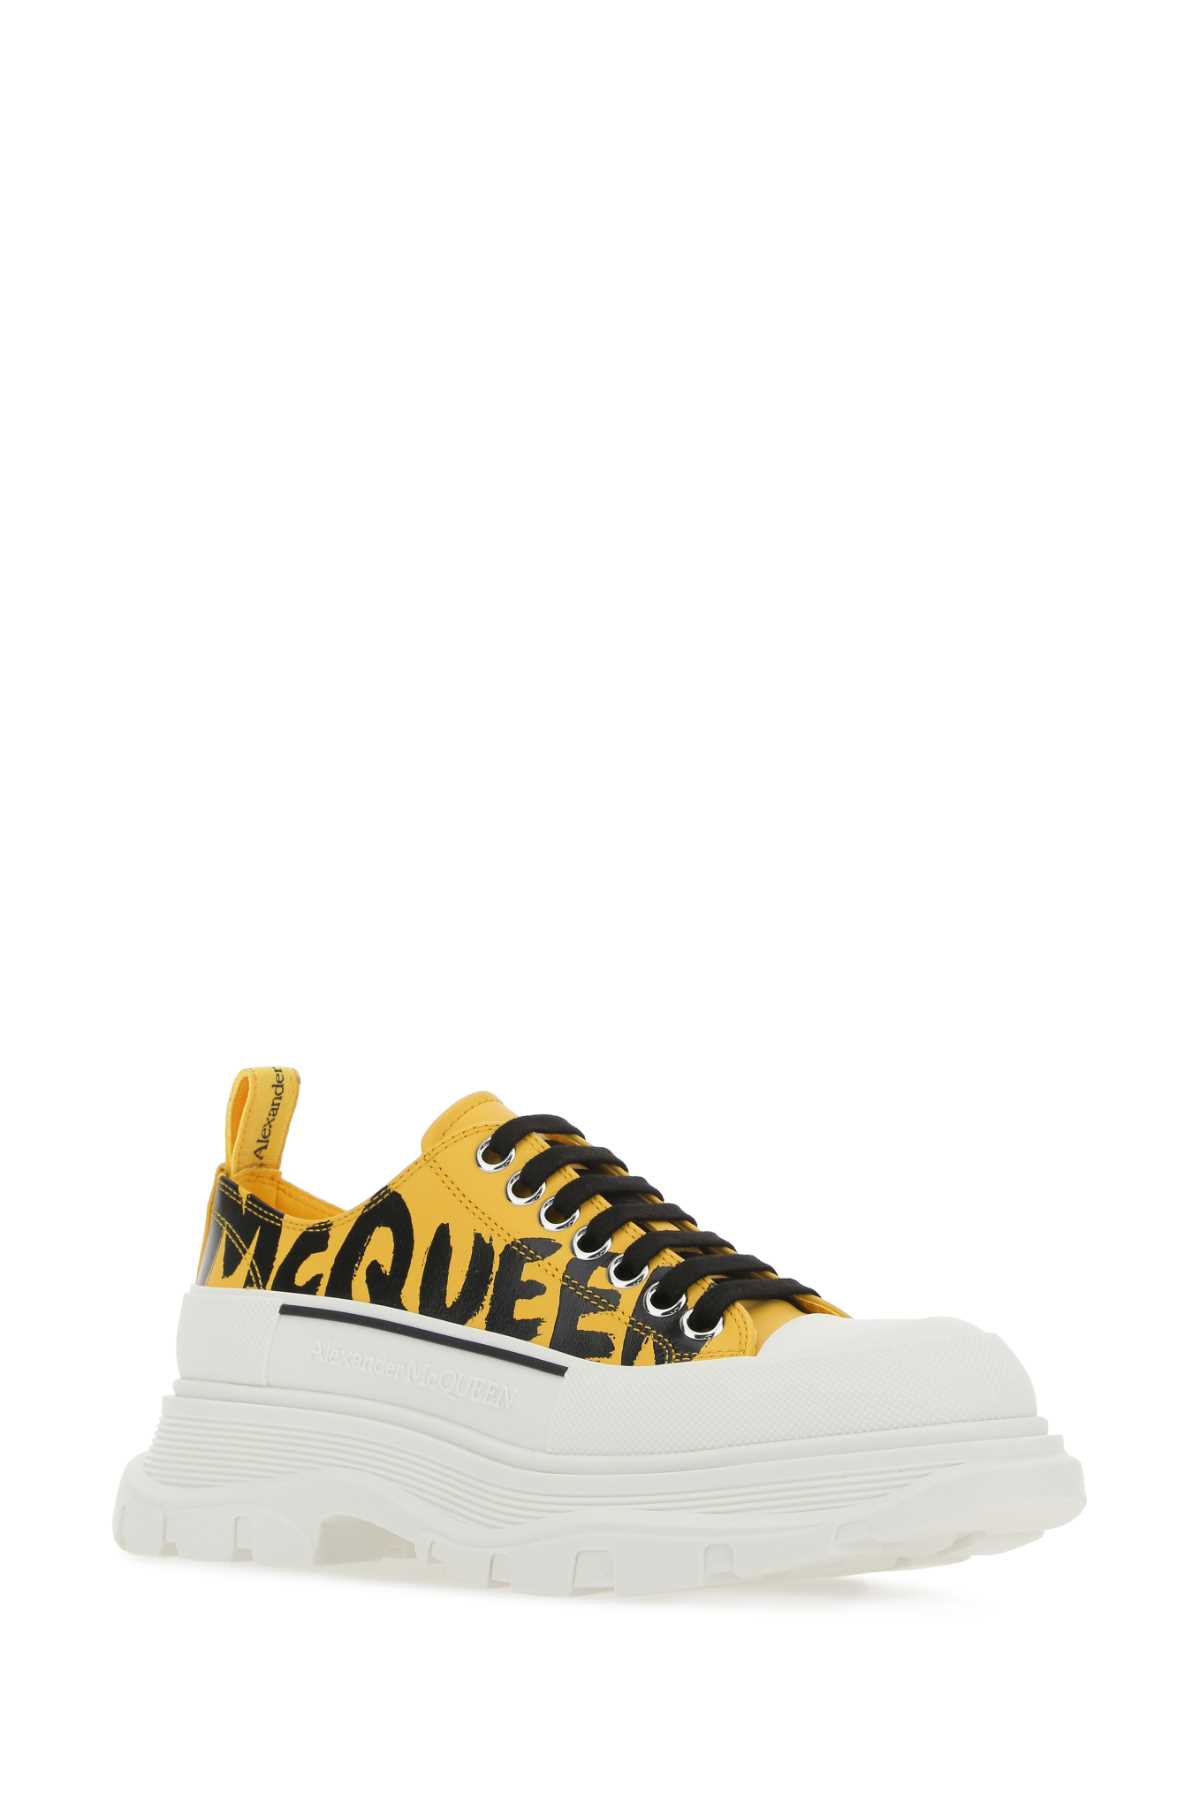 Shop Alexander Mcqueen Yellow Leather Tread Slick Sneakers In 7086